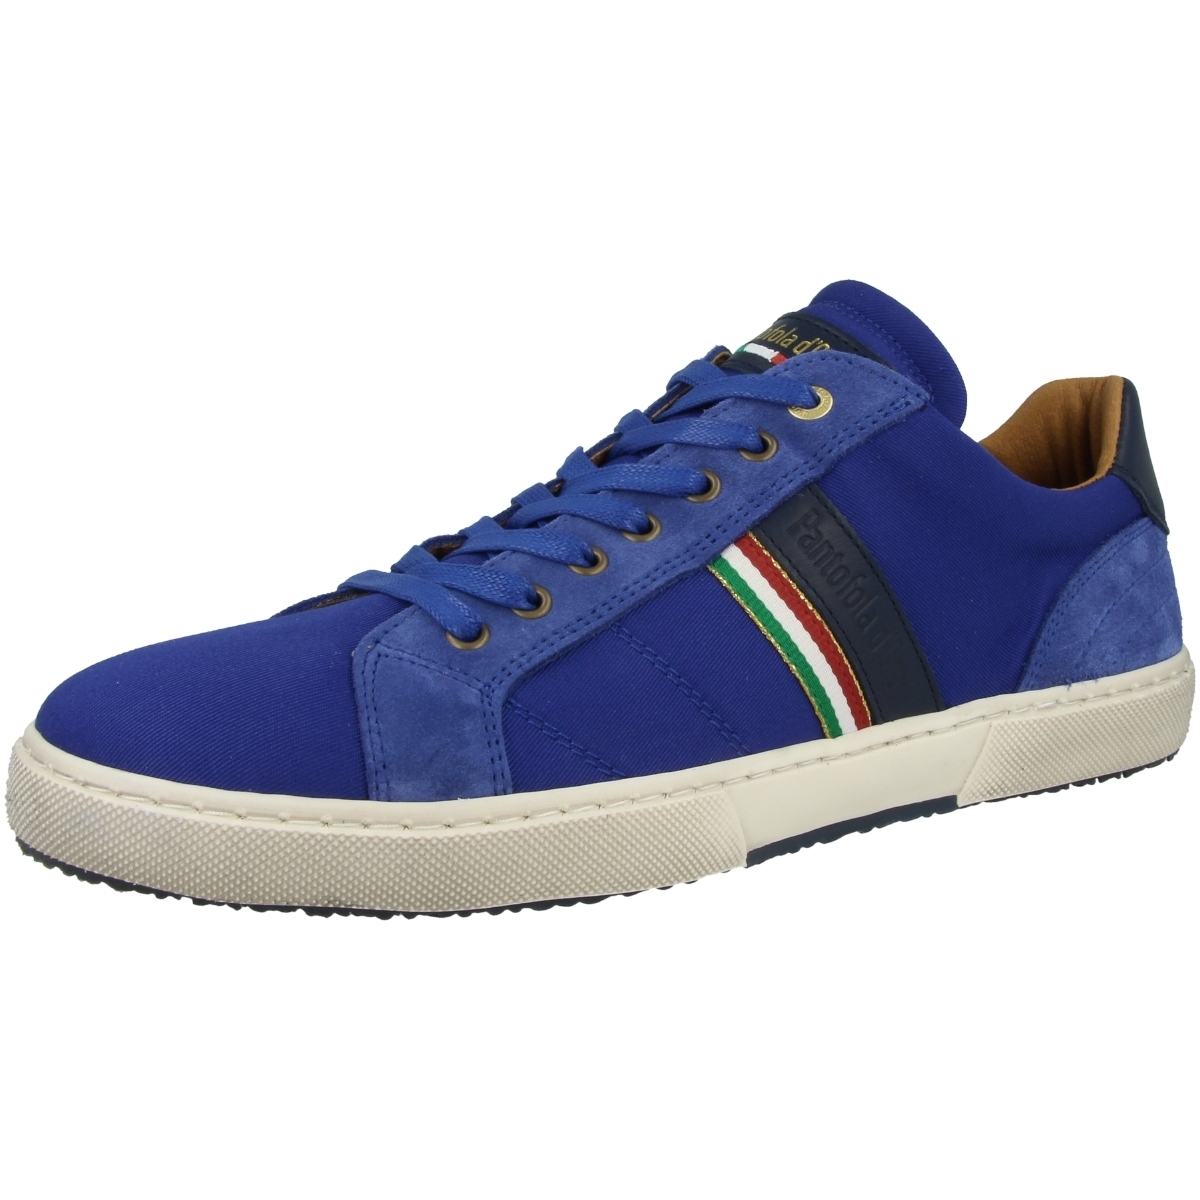 Pantofola d Oro Modena Canvas Uomo Low Sneaker blau